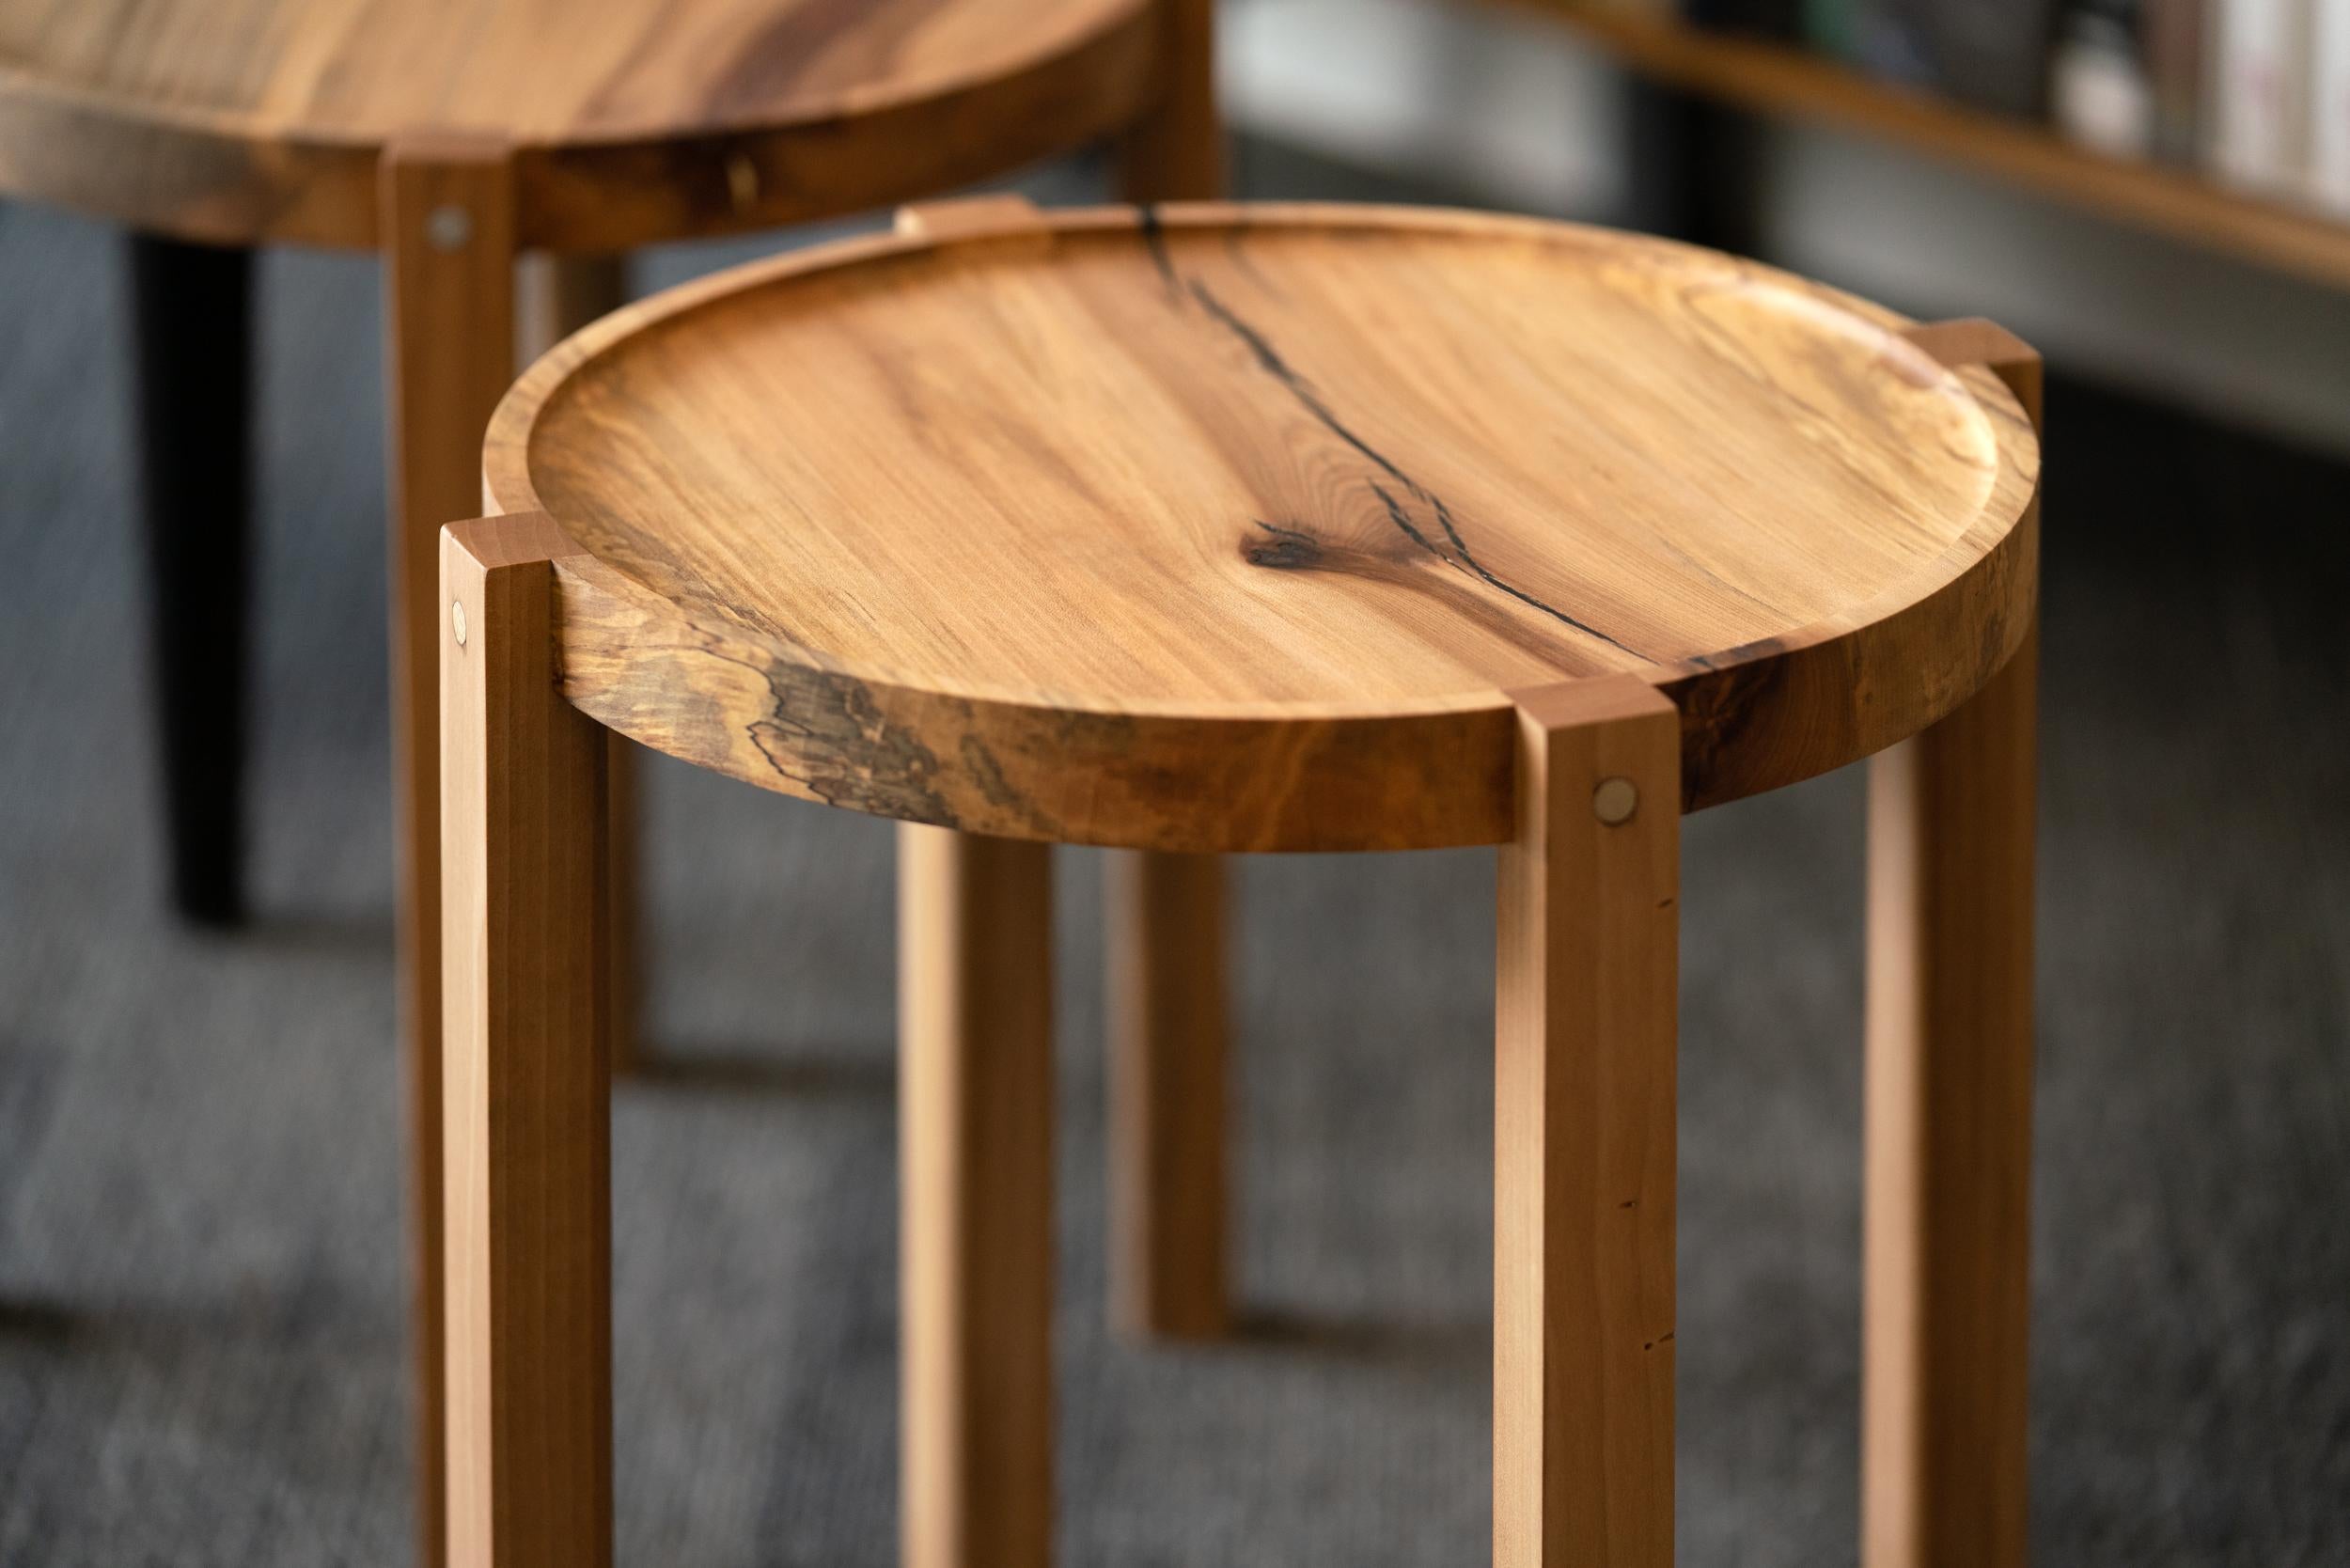 Wir stellen den Waverly-Tisch vor. Dieser vielseitige Beistelltisch ist klein, rund und leicht, mit Kurven zum Anfassen. Er ist aus feinstem, wiederverwendetem städtischem Holz gefertigt. Ein natürliches Holzfinish auf Eukalyptus, oft auch